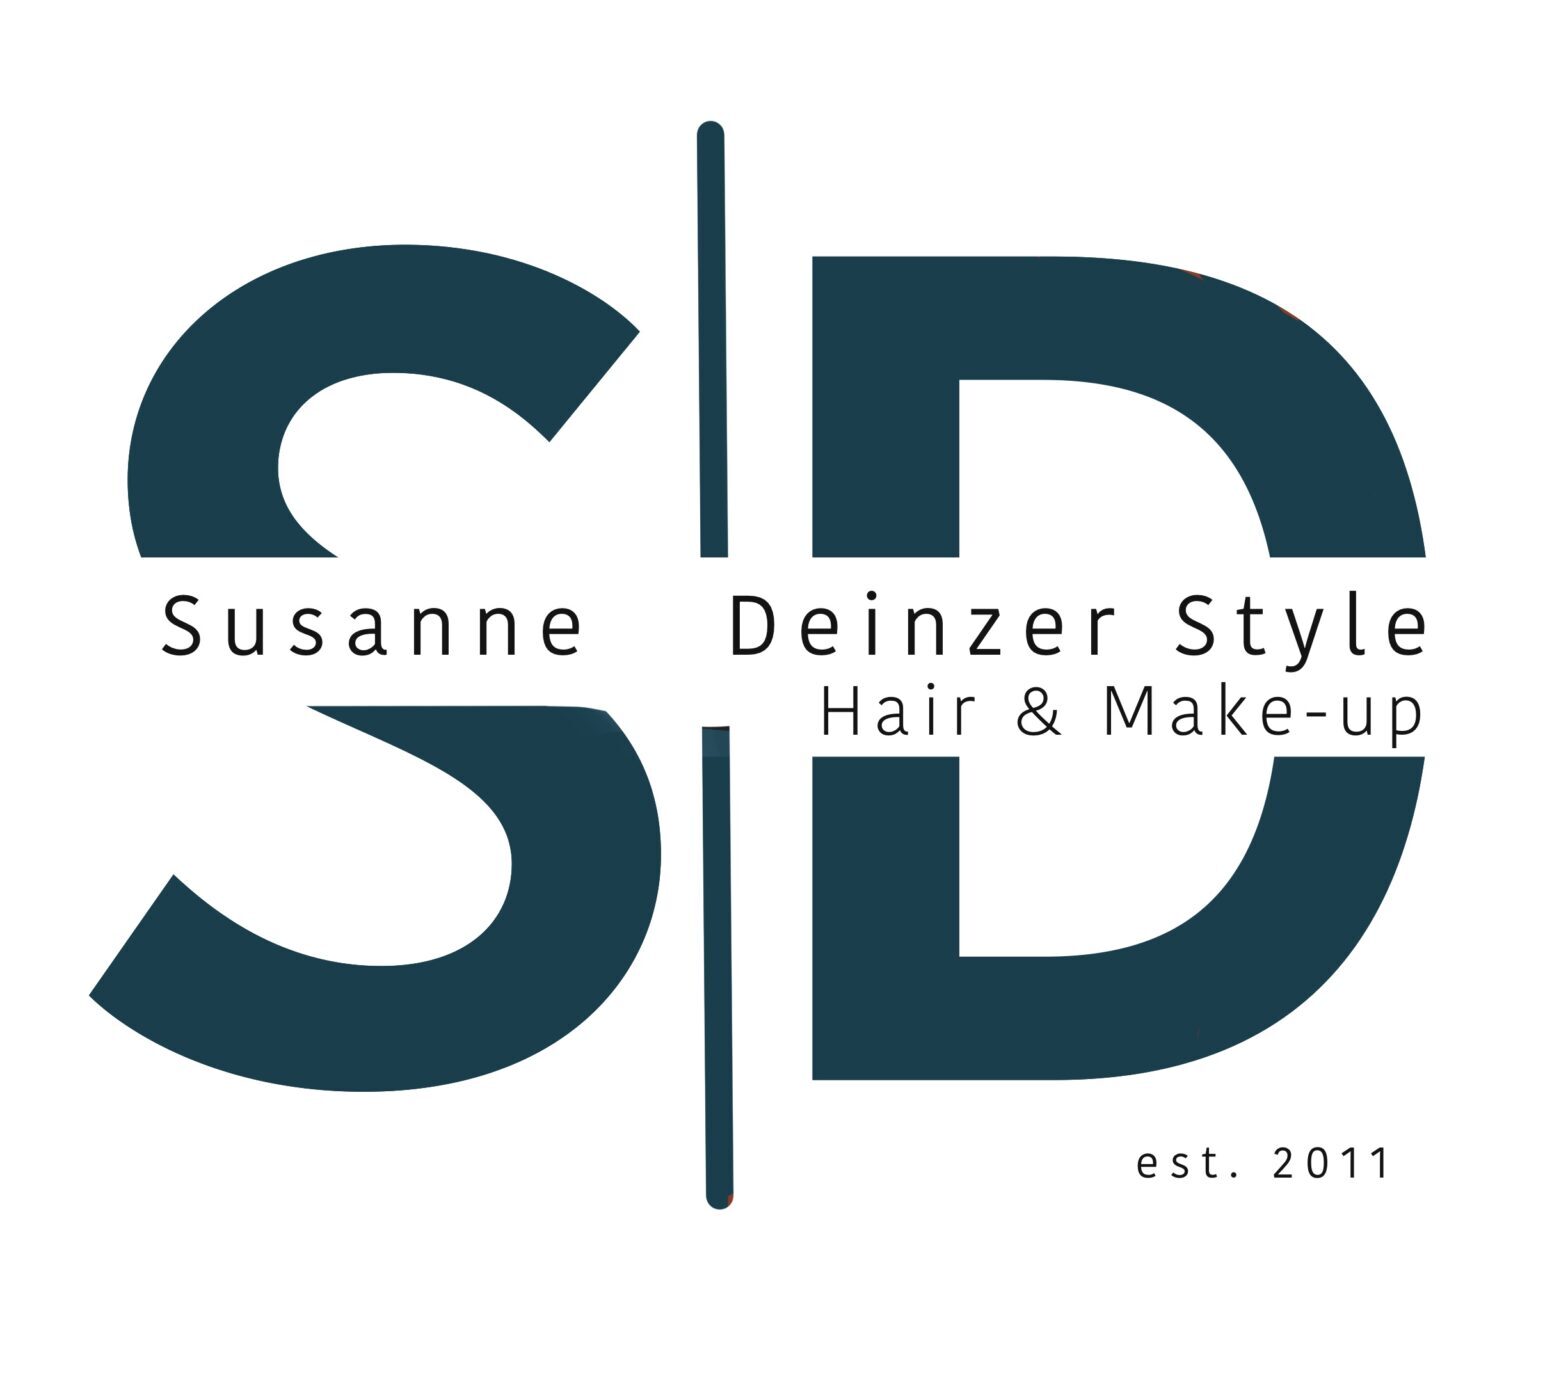 Susanne Deinzer Style | Hair & Make-up